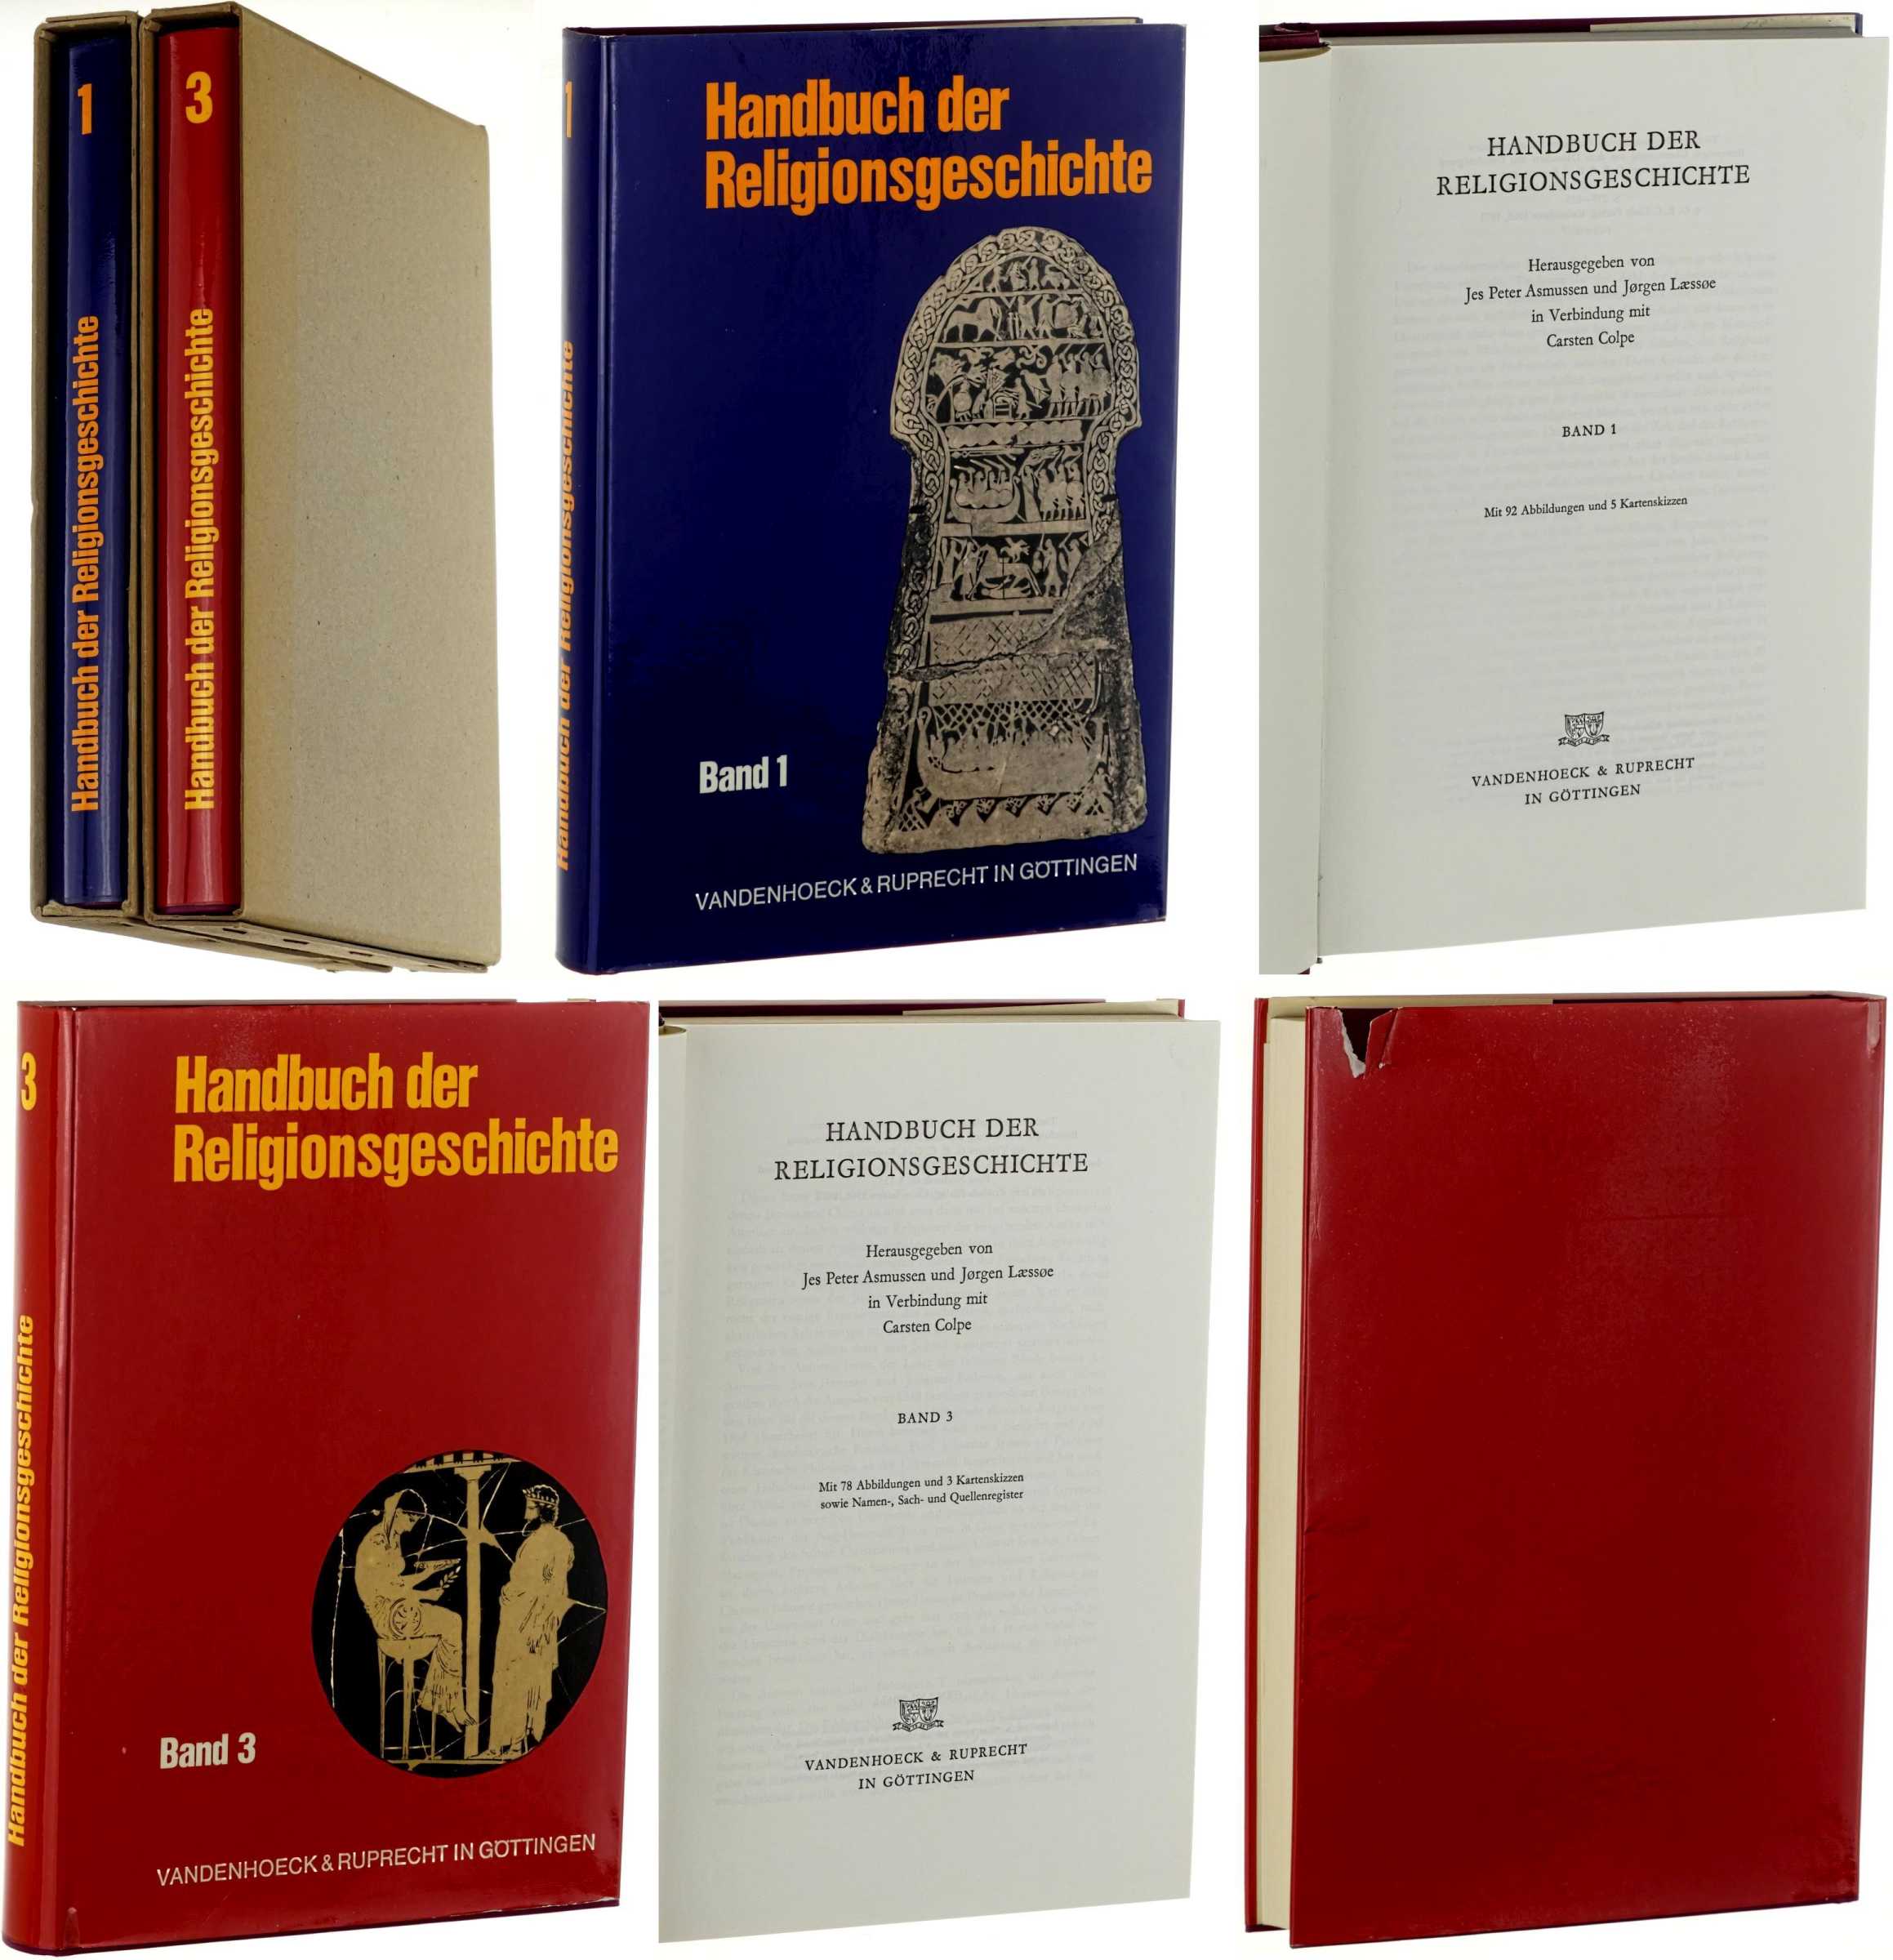 Handbuch der Religionsgeschichte.  Hrsg. von Jes Peter Asmussen u. Jørgen Laessøe in Verbindung mit Carsten Colpe. 